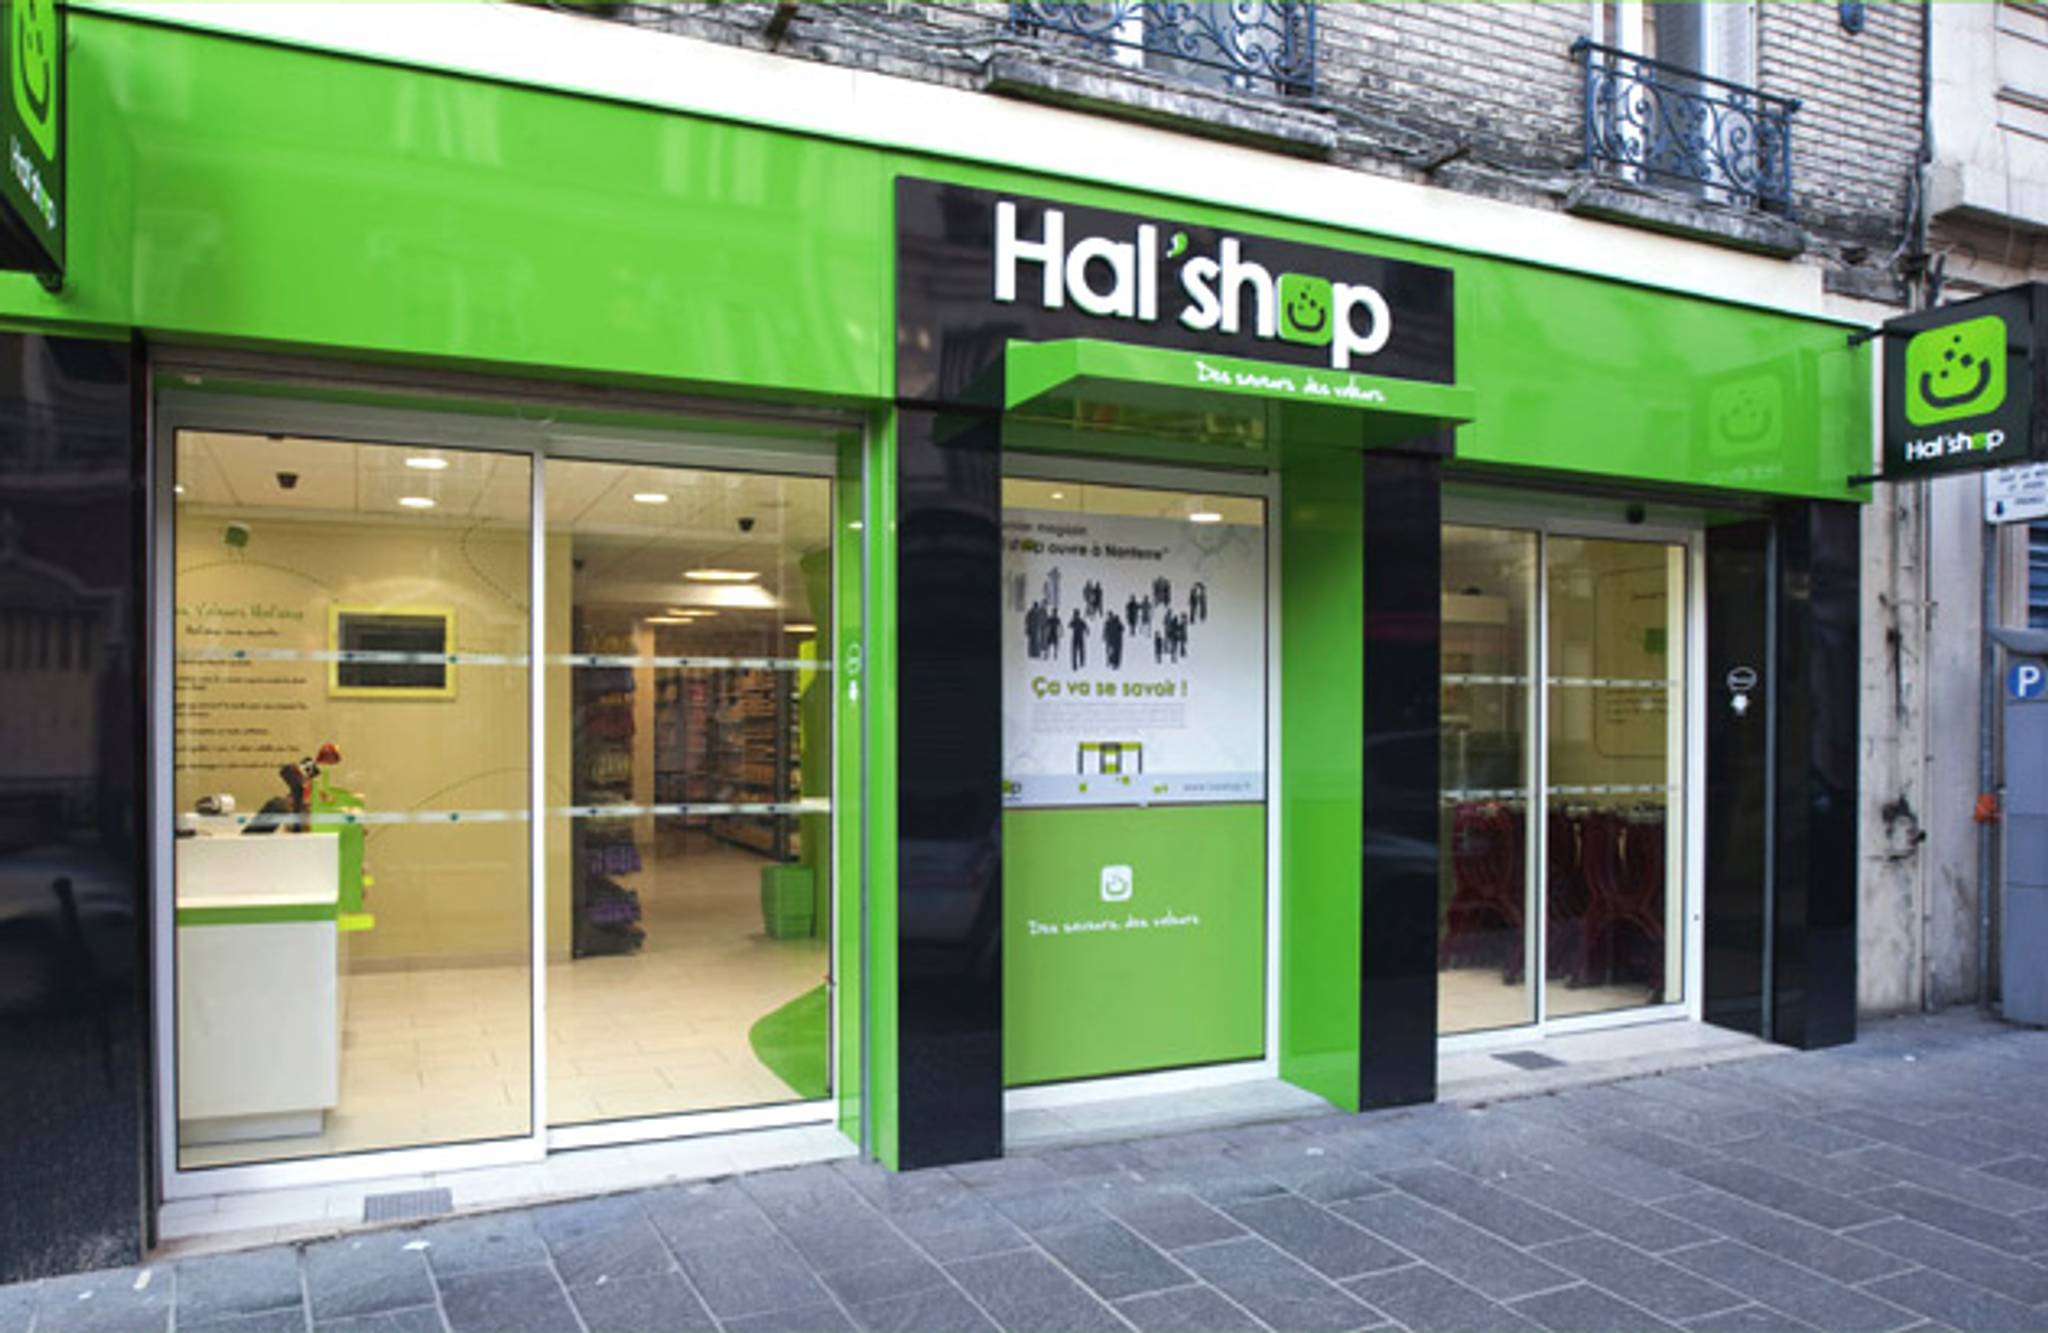 Hal'shop